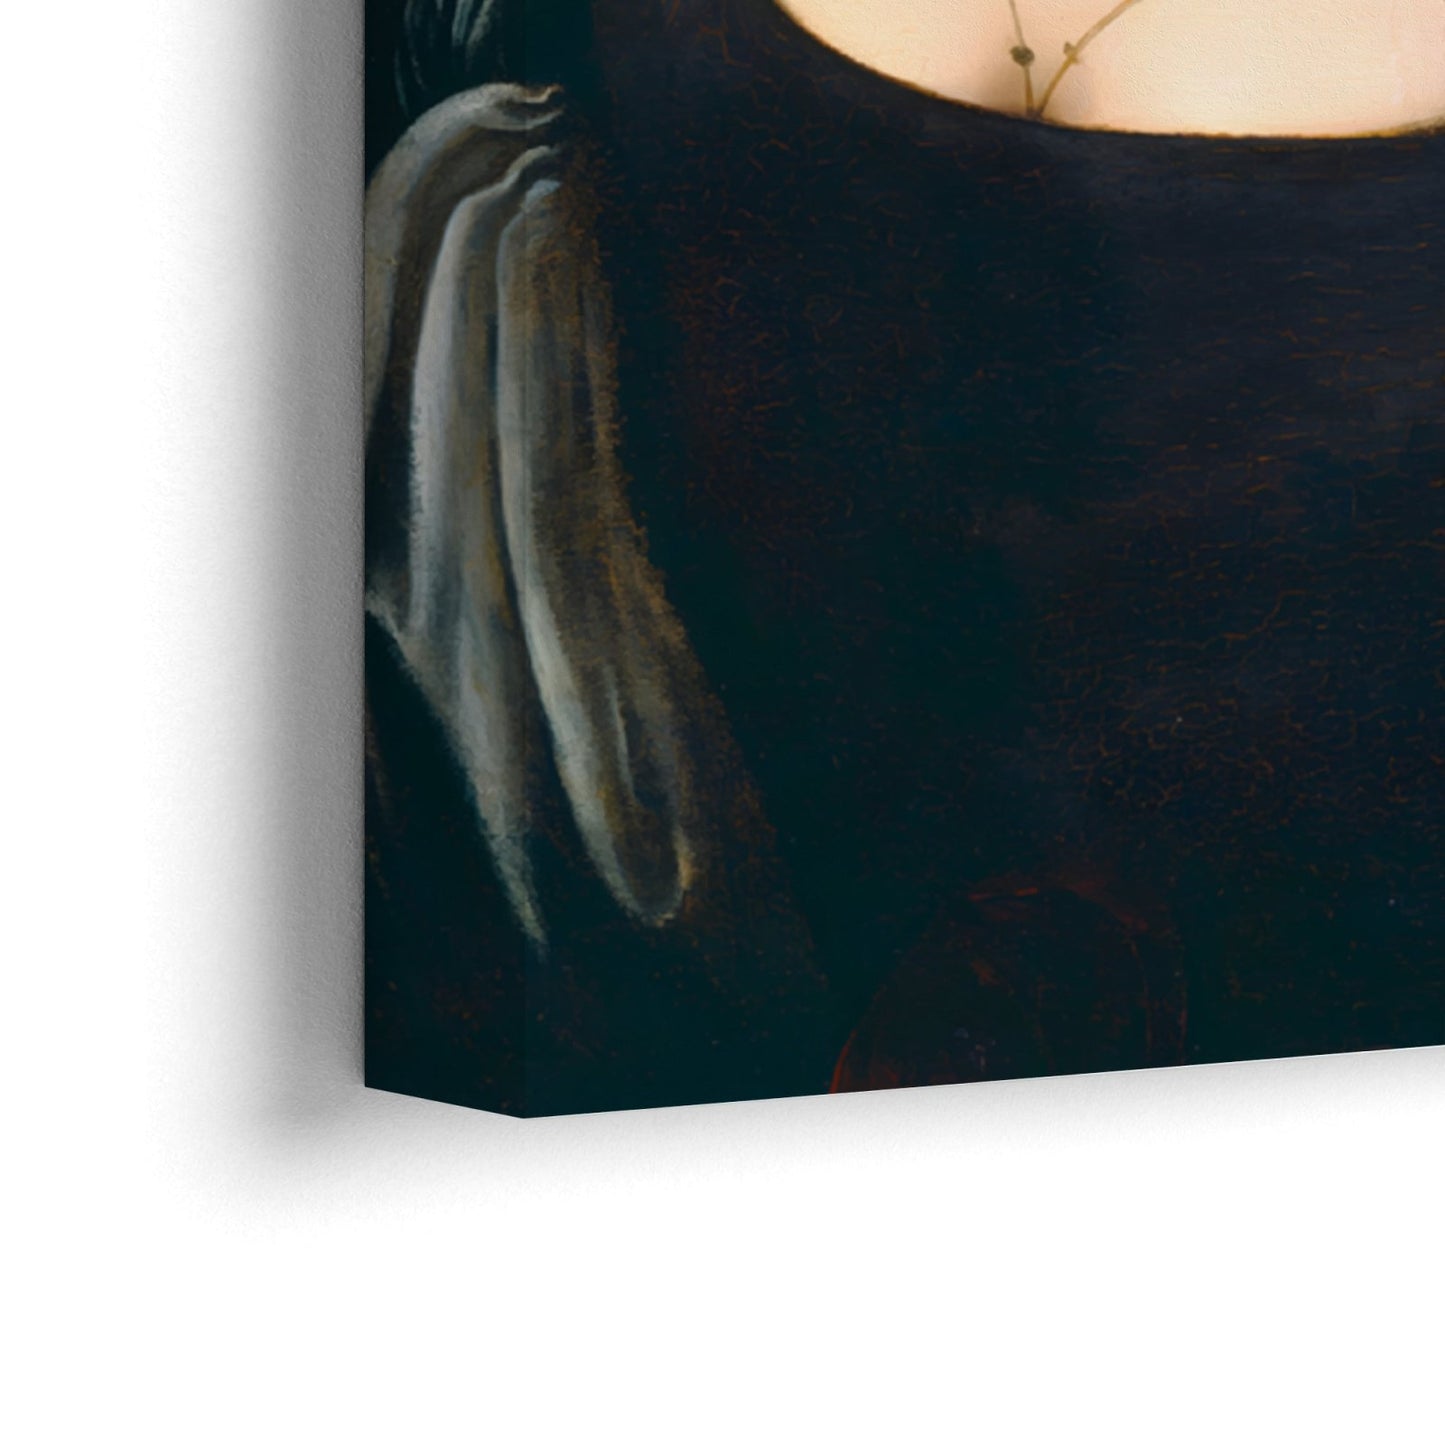 Portrét mladej ženy Leonarda Da Vinciho